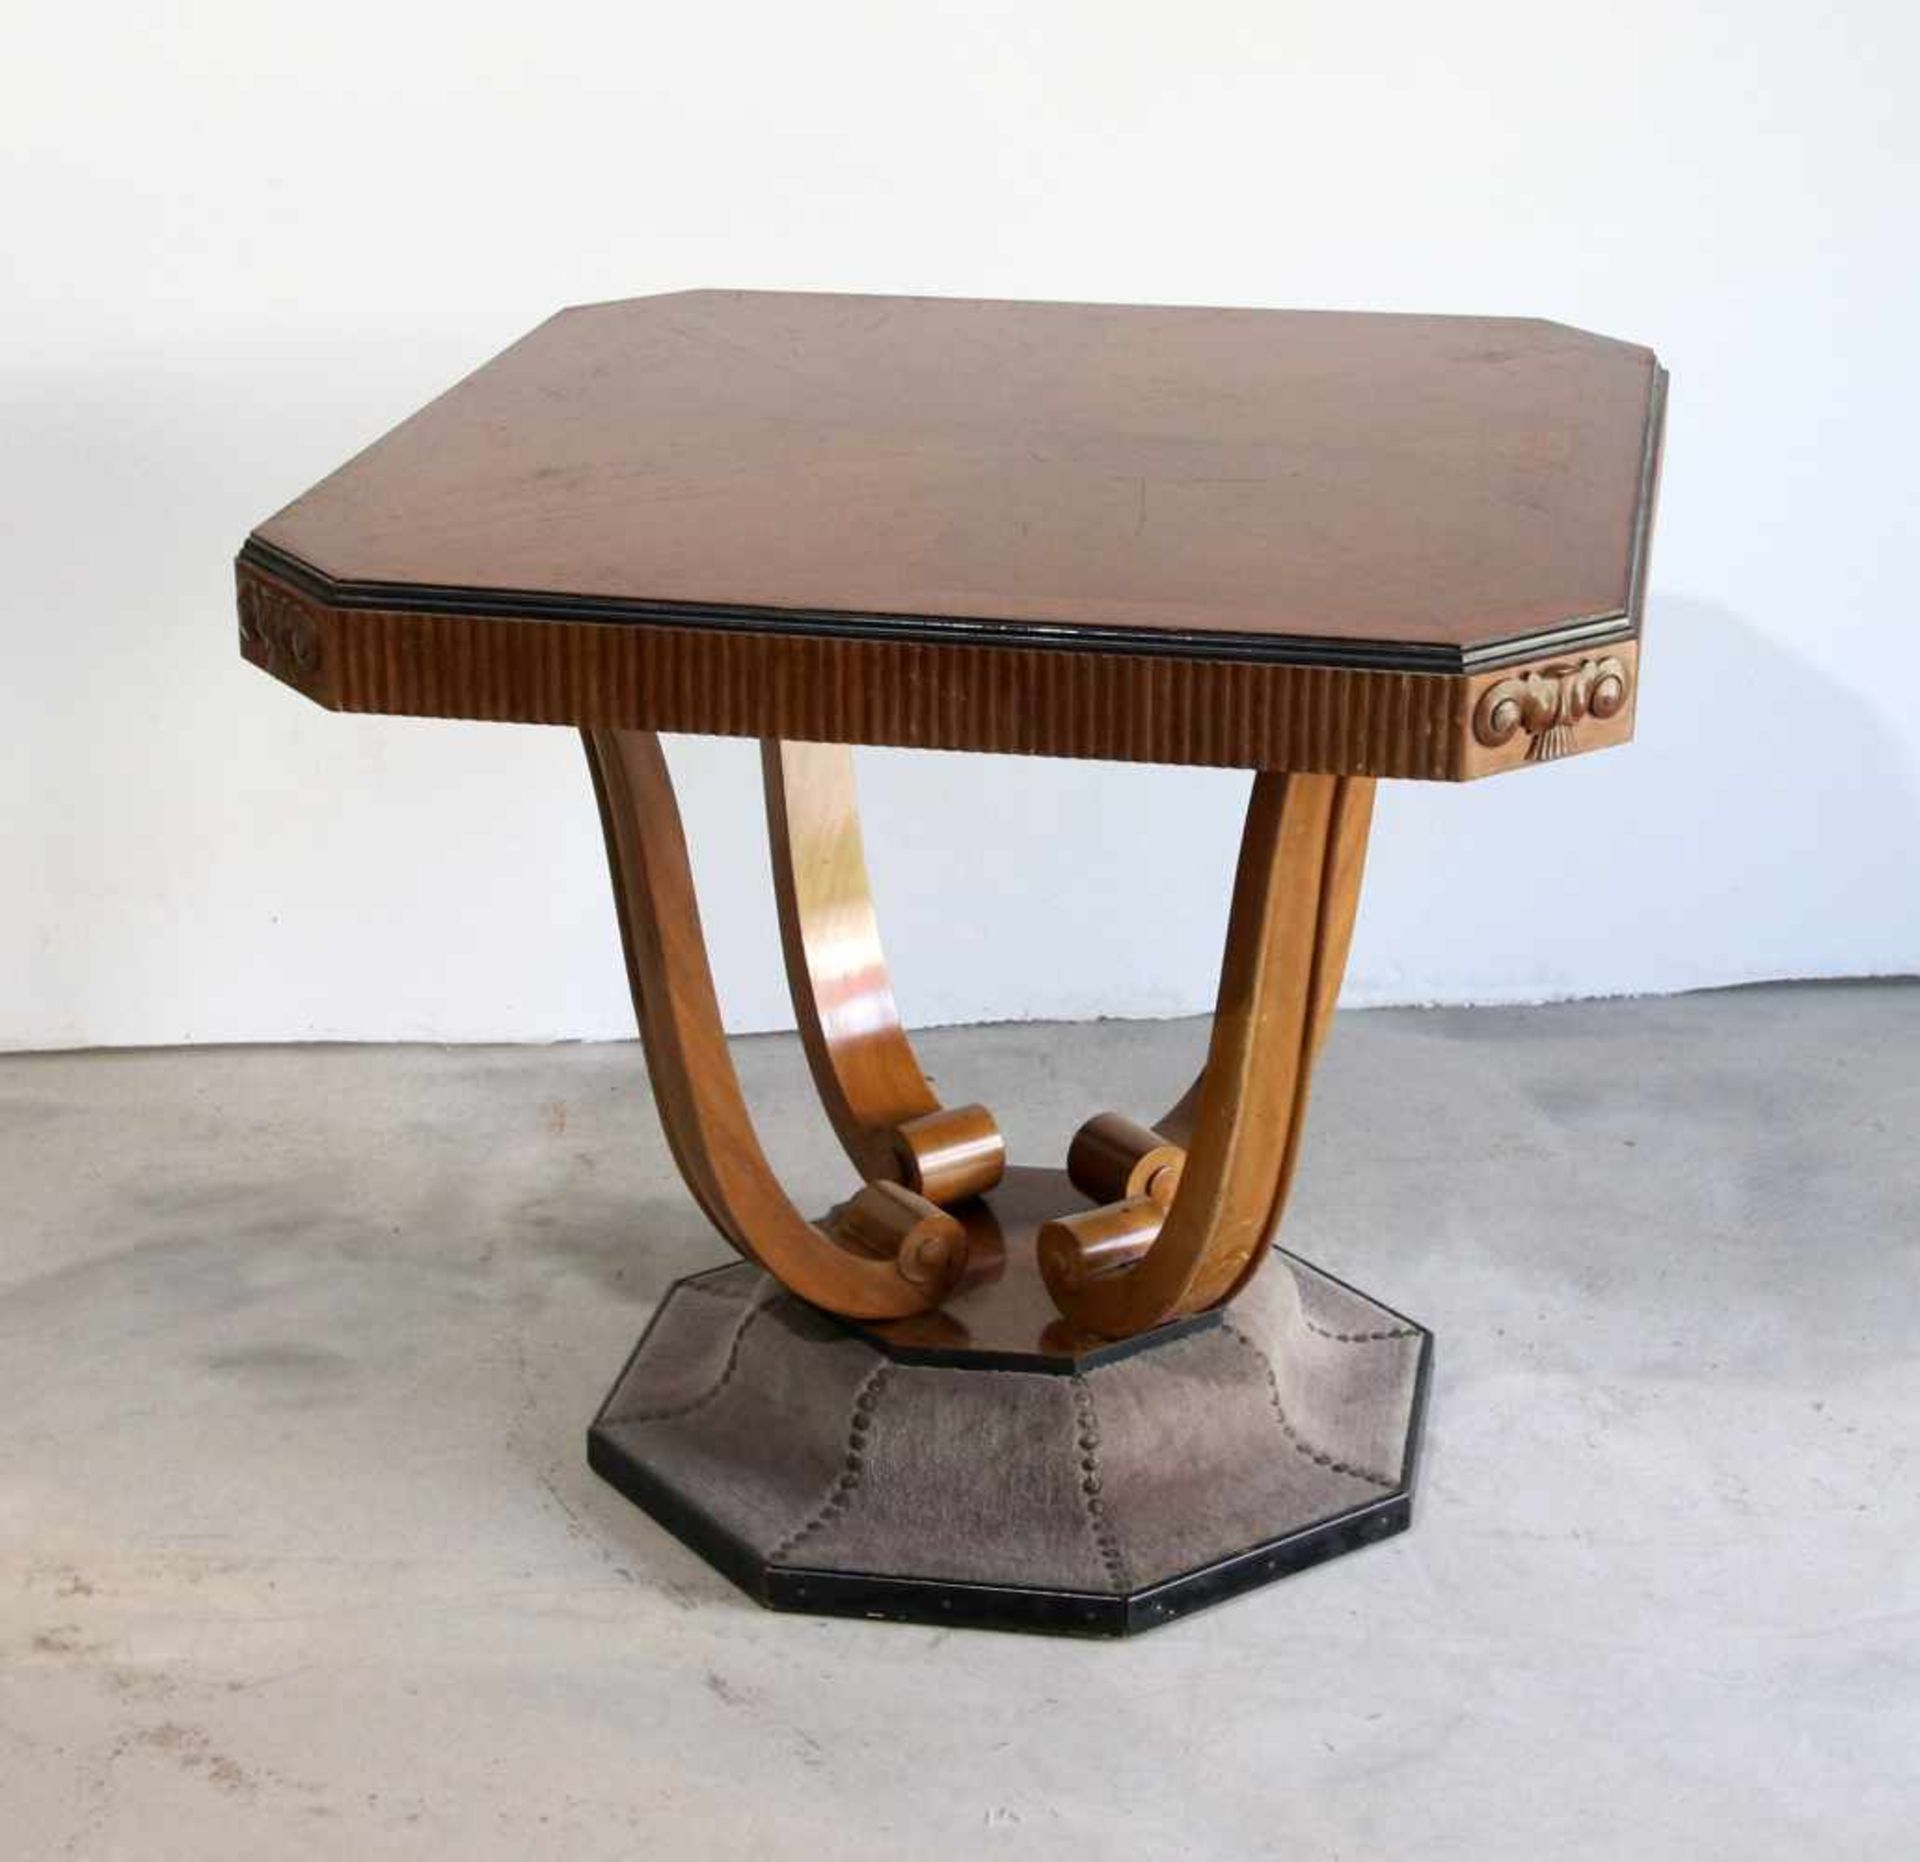 Salon-Tisch Art decoum 1920, Hartholz, quadratische Platte mit abgeschrägten Ecken und